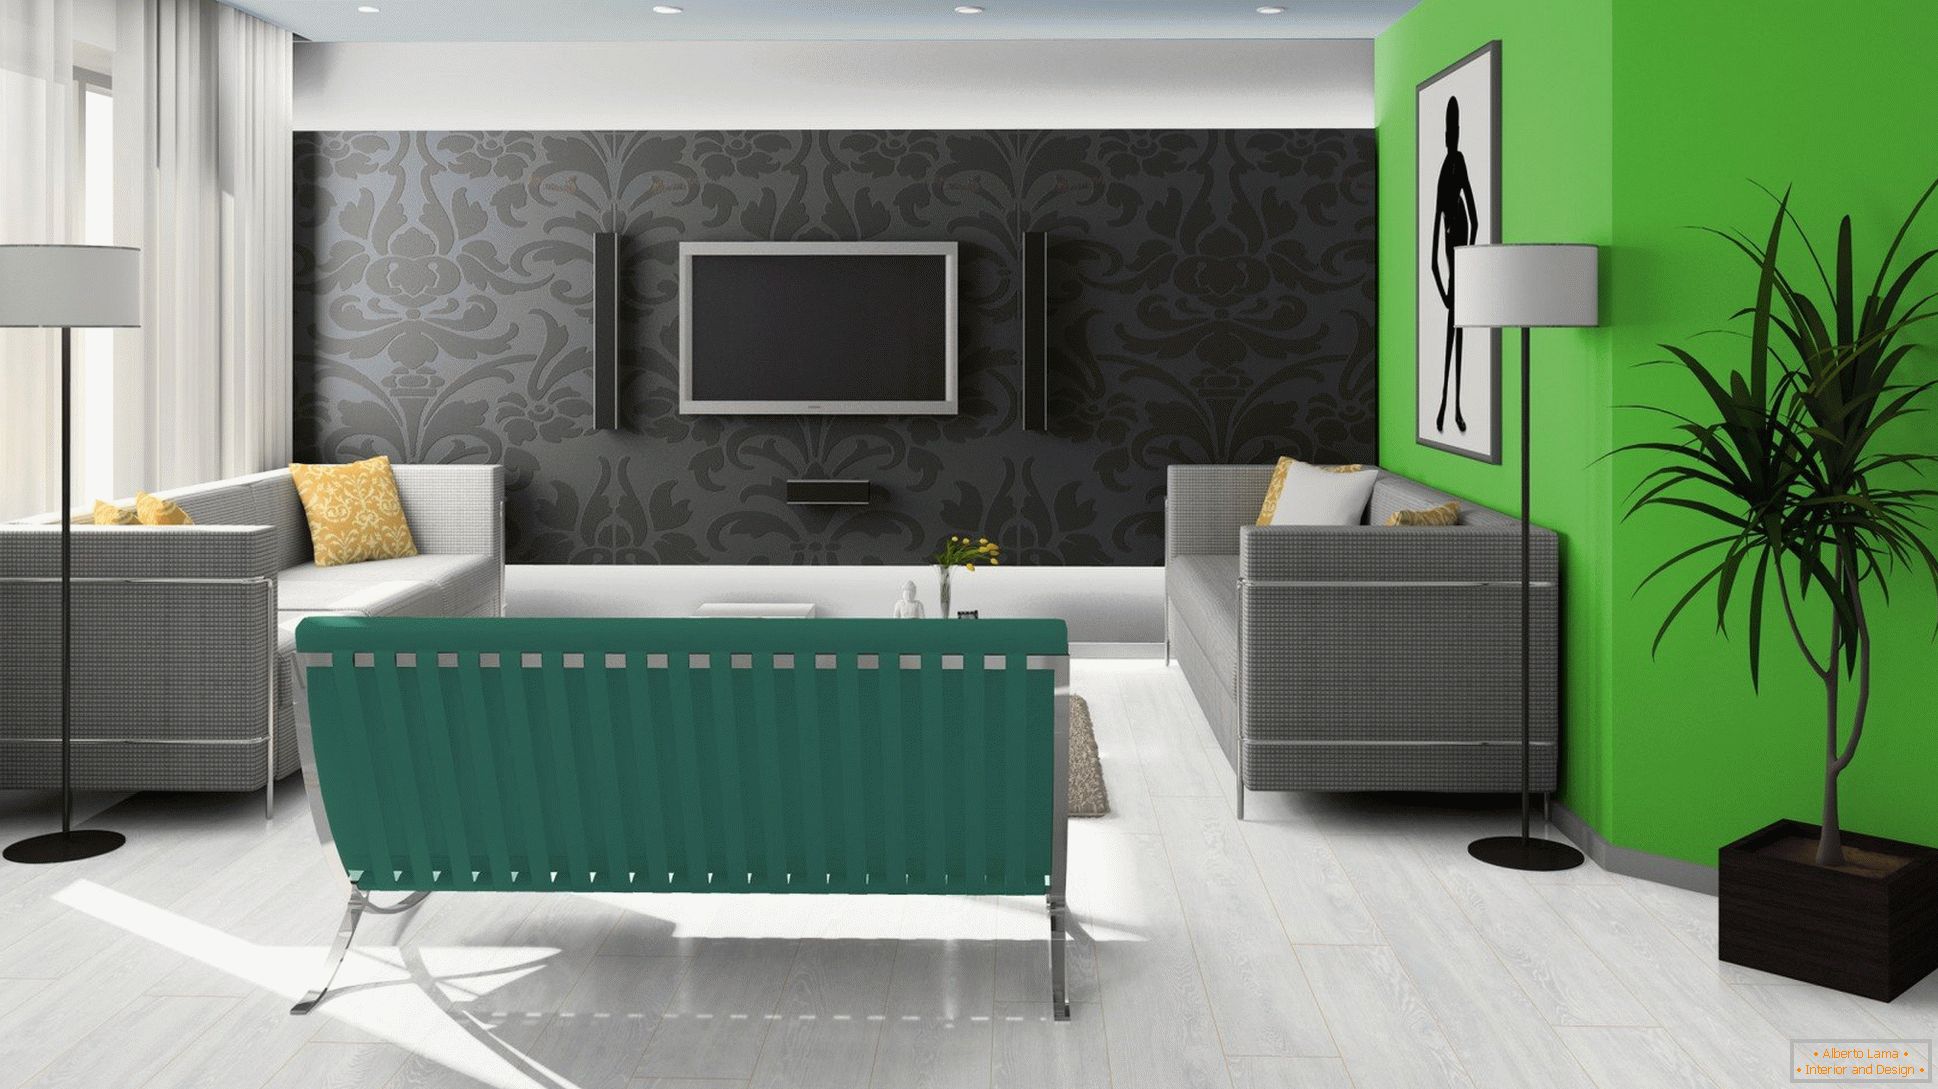 Fekete, zöld és fehér a nappali kialakításában